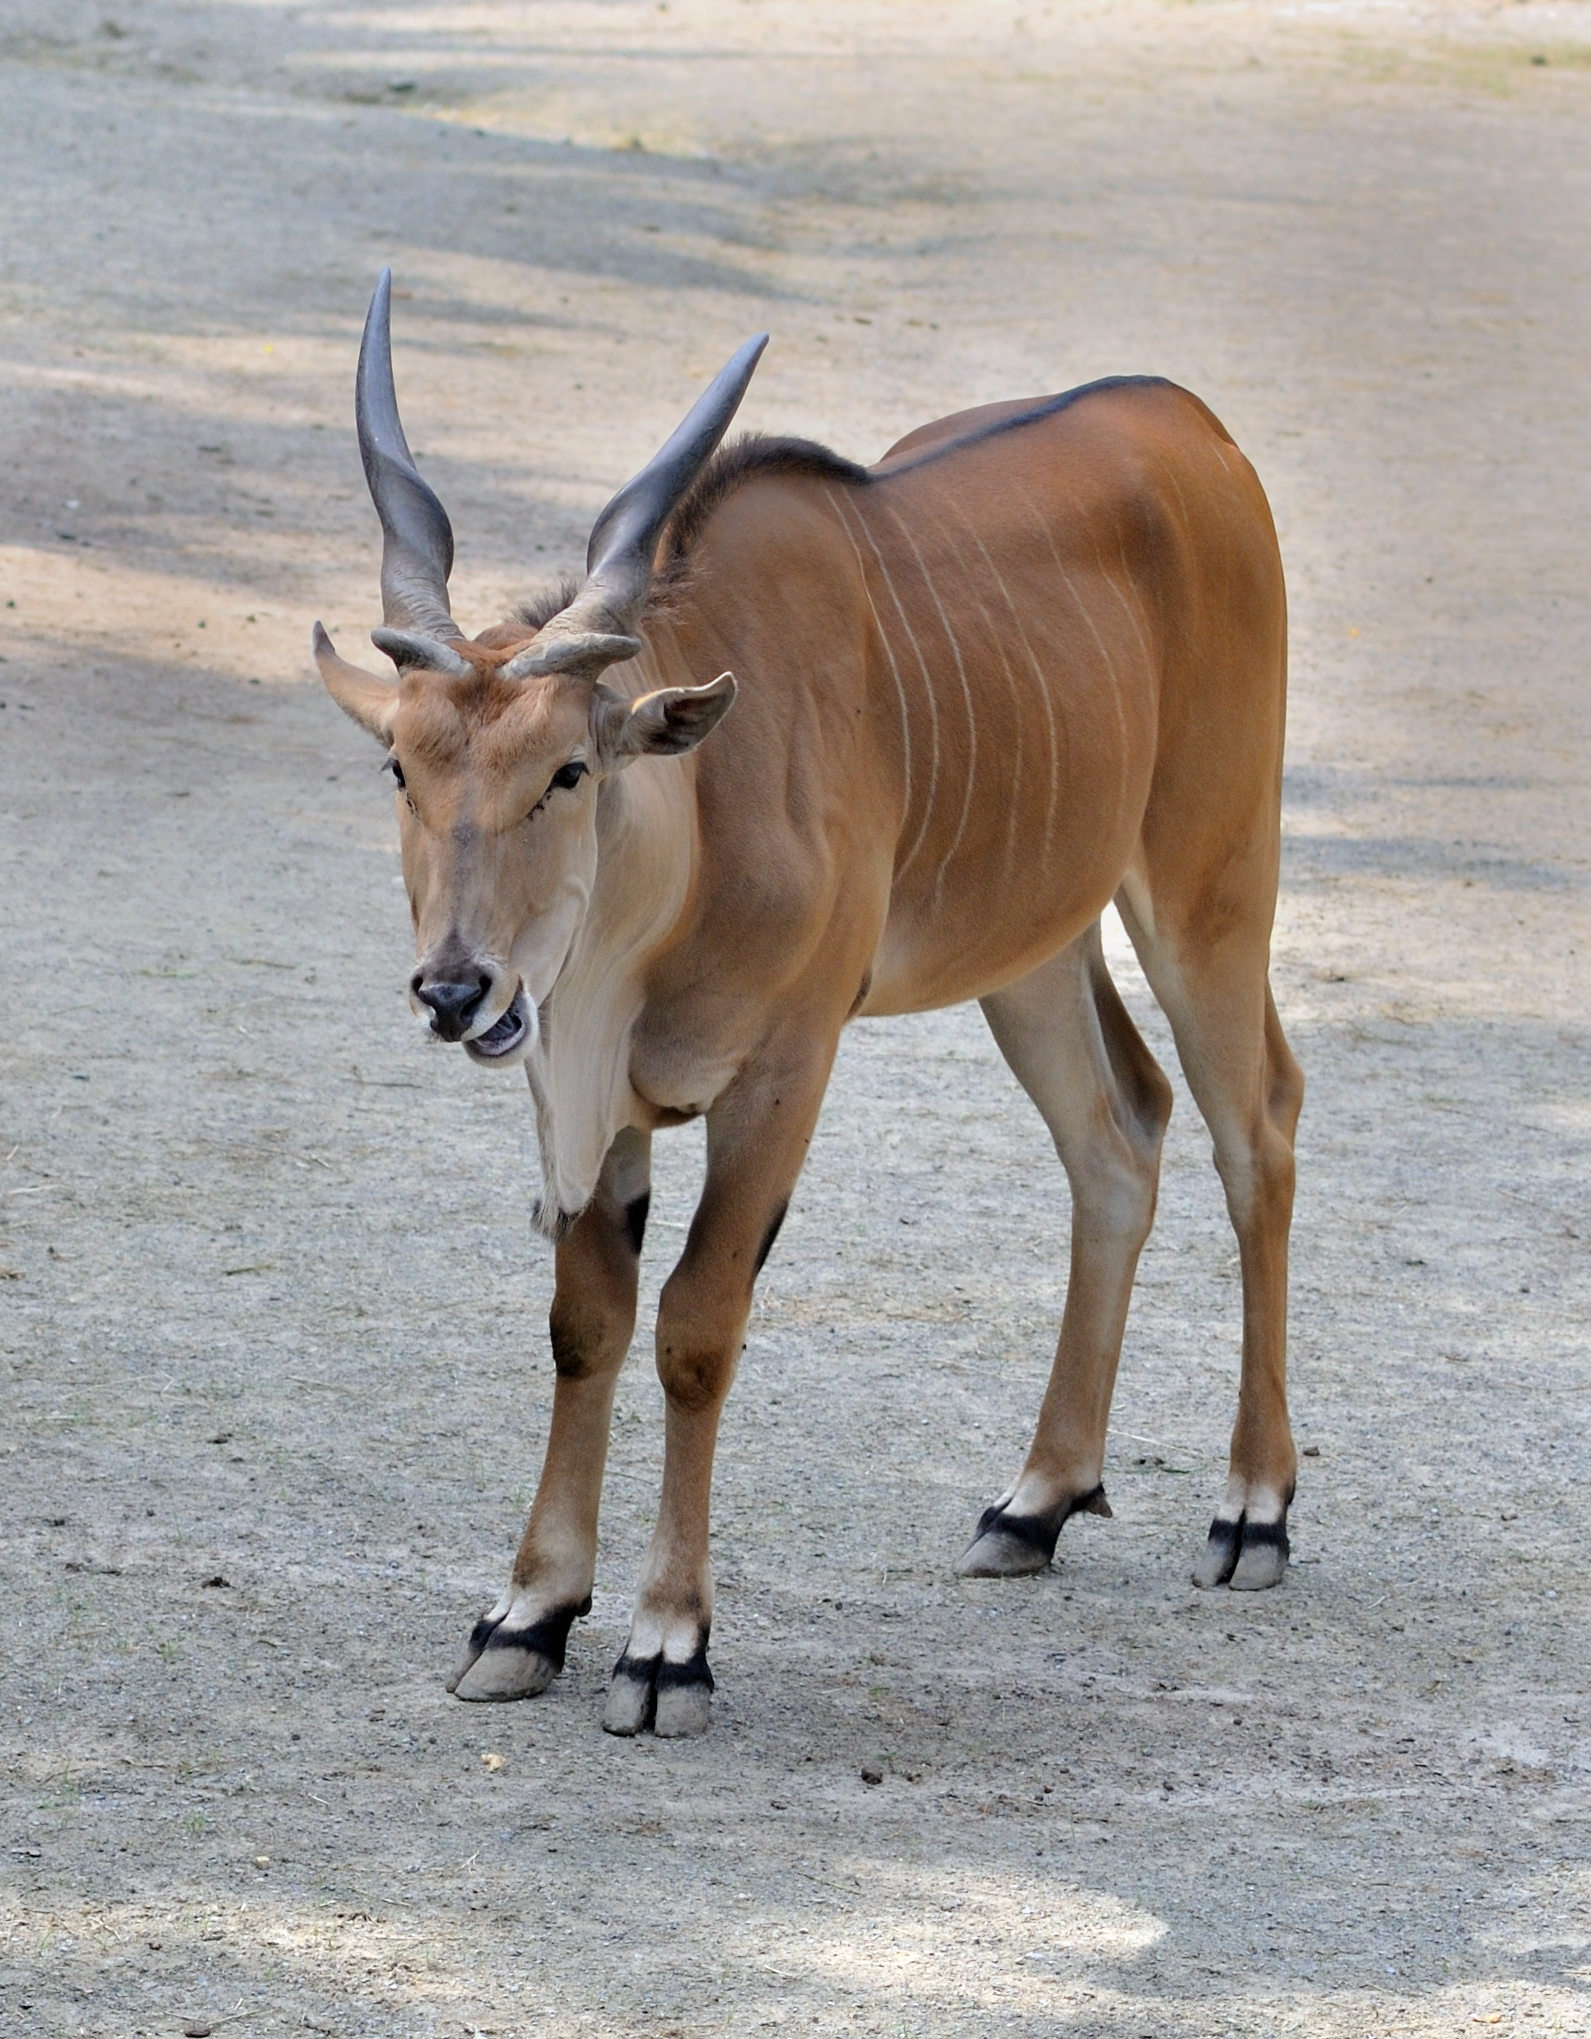 Taurotragus oryx qtl1